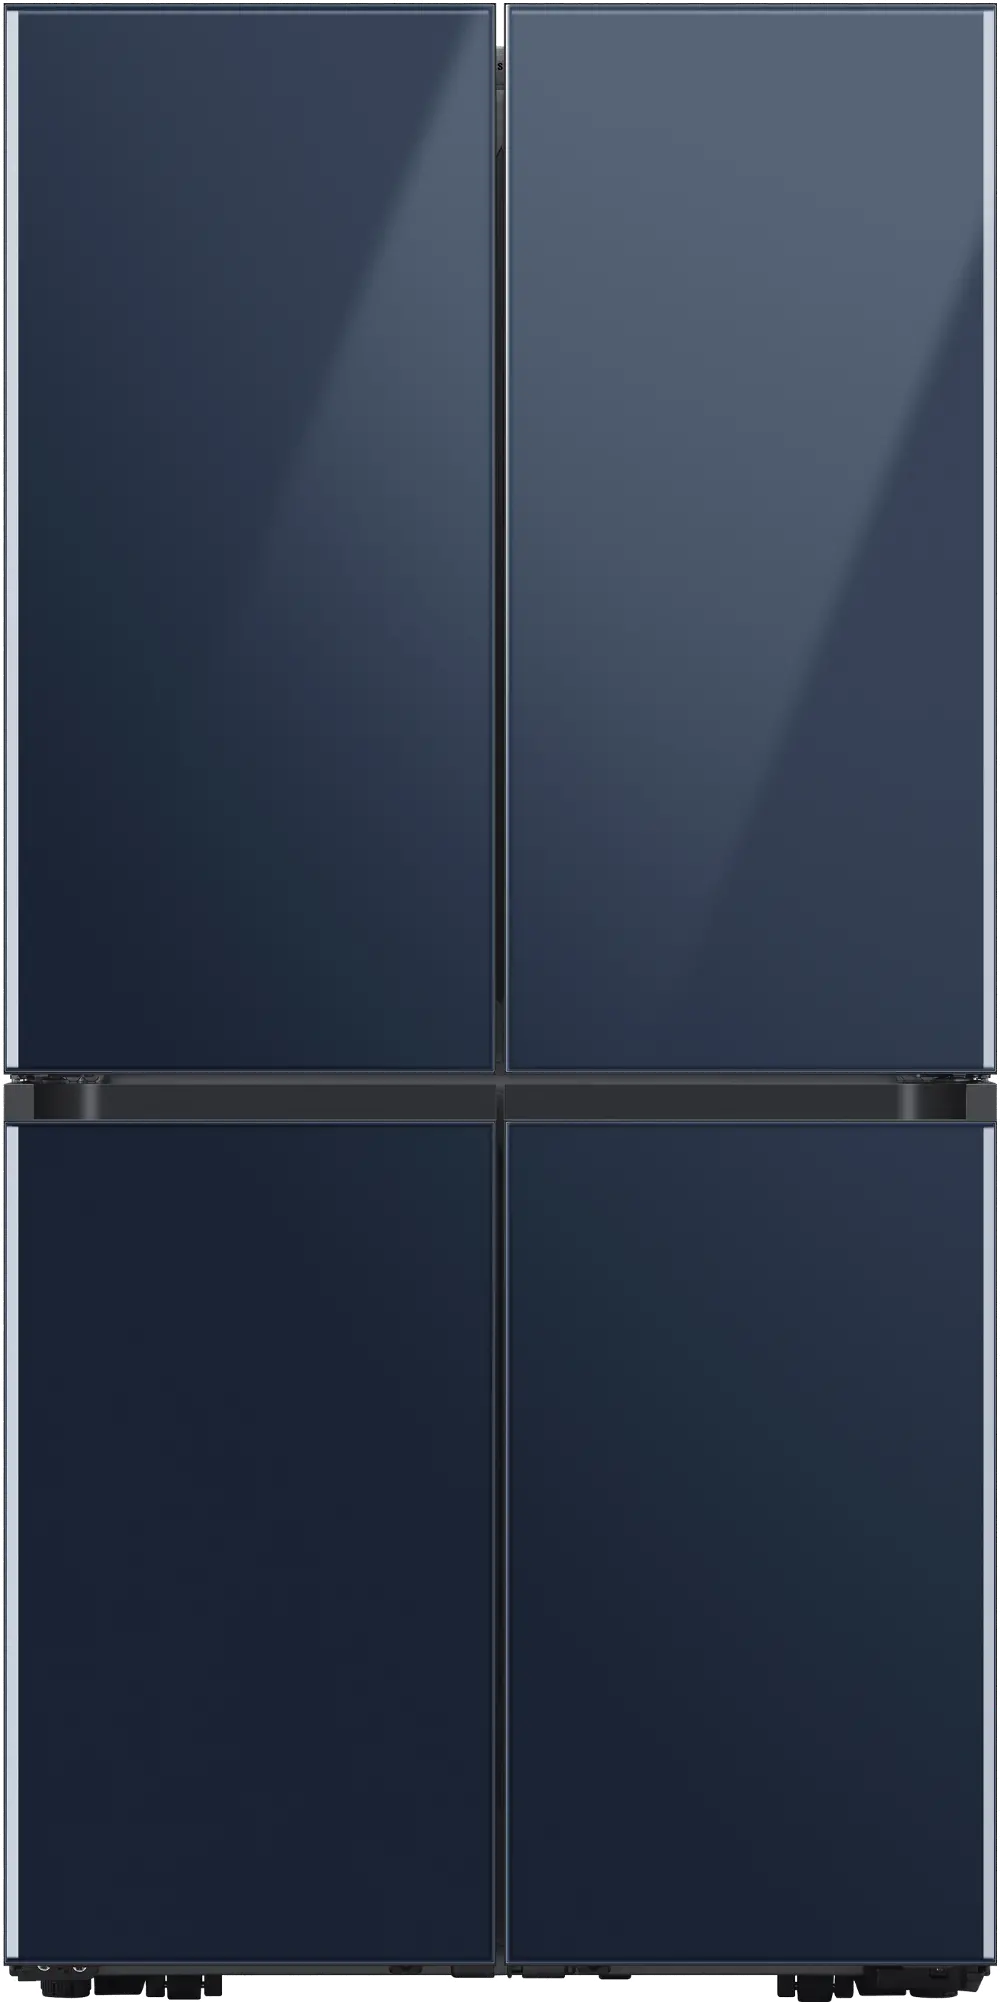 RF23A967541 Samsung Bespoke 22.8 cu ft Smart 4 Door Flex Refrigerator - Counter Depth Navy Blue-1